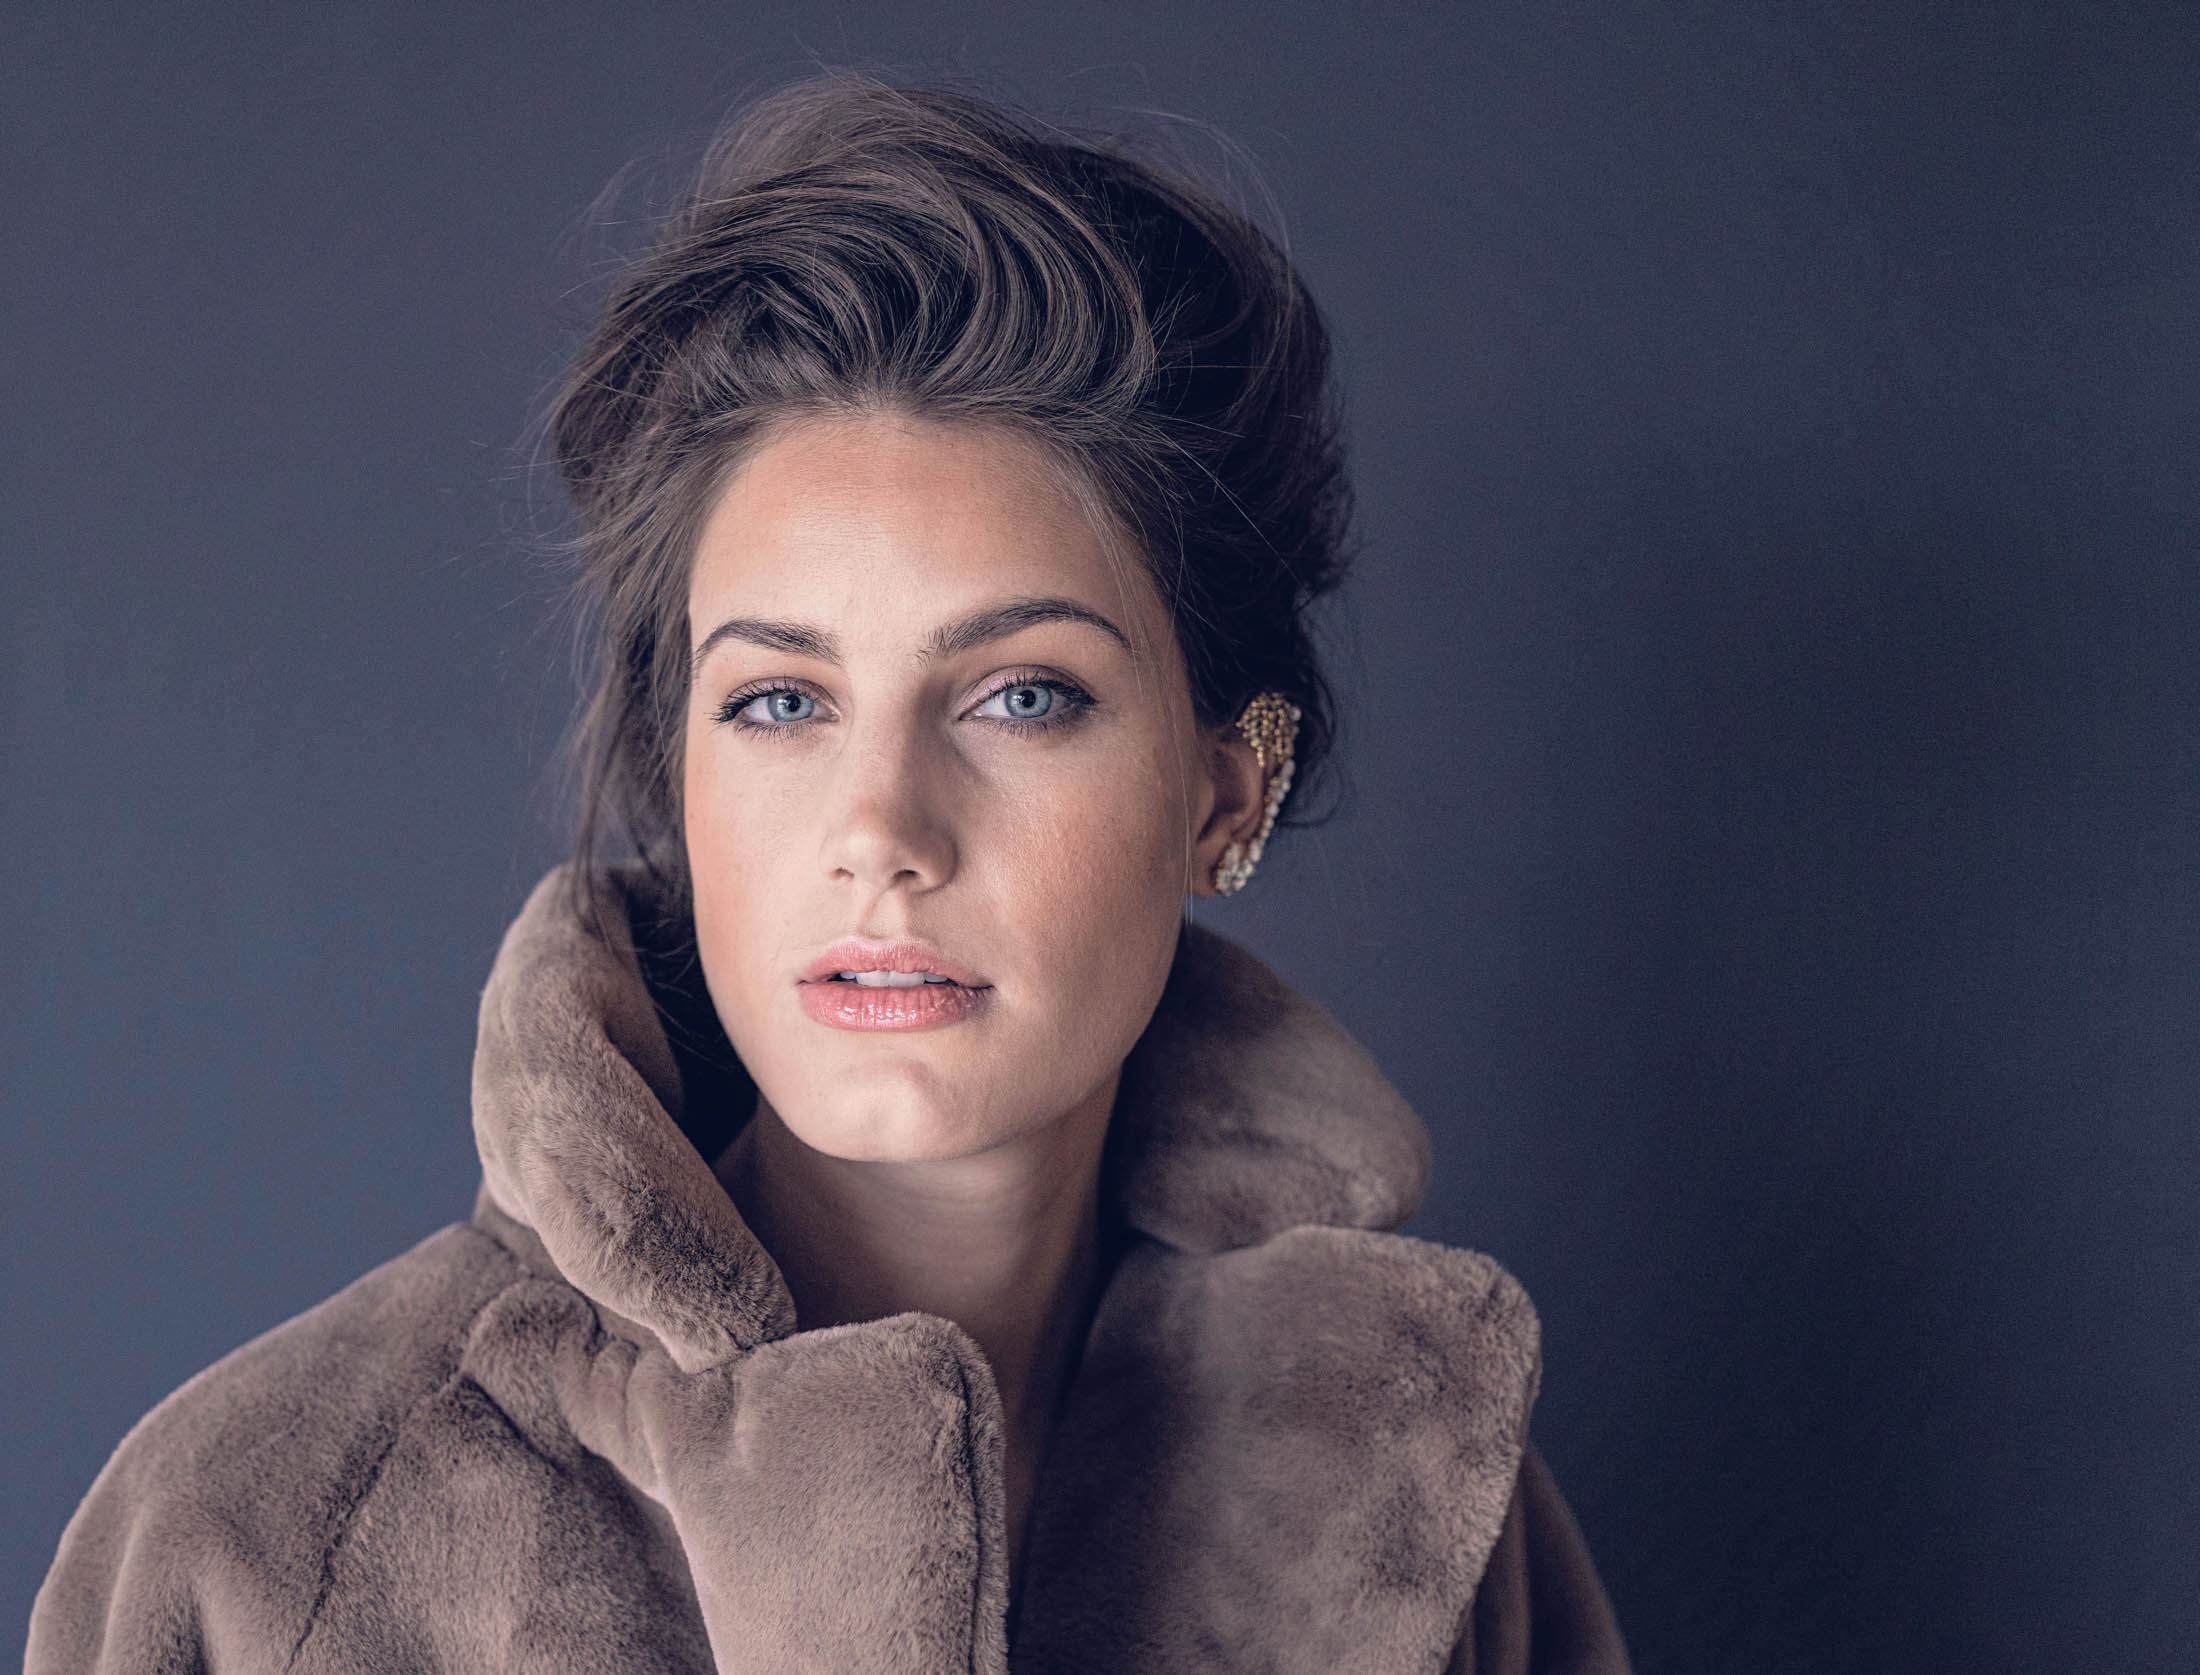 Ein Porträt einer Frau mit auffallend blauen Augen, die einen weichen braunen Mantel mit hohem Kragen trägt und ihr Haar elegant frisiert ist, vor einem grauen Hintergrund. © Fotografie Tomas Rodriguez